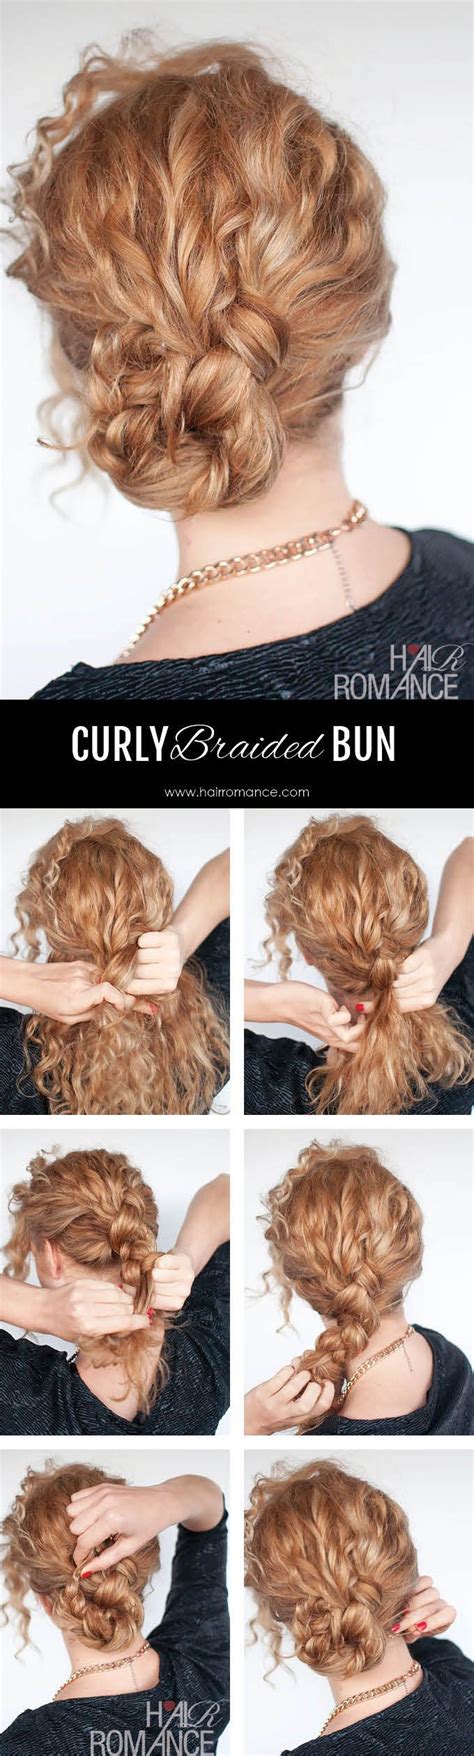 Easy Curly Braided Bun Tutorial Hair Romance Braided Bun Hairstyles